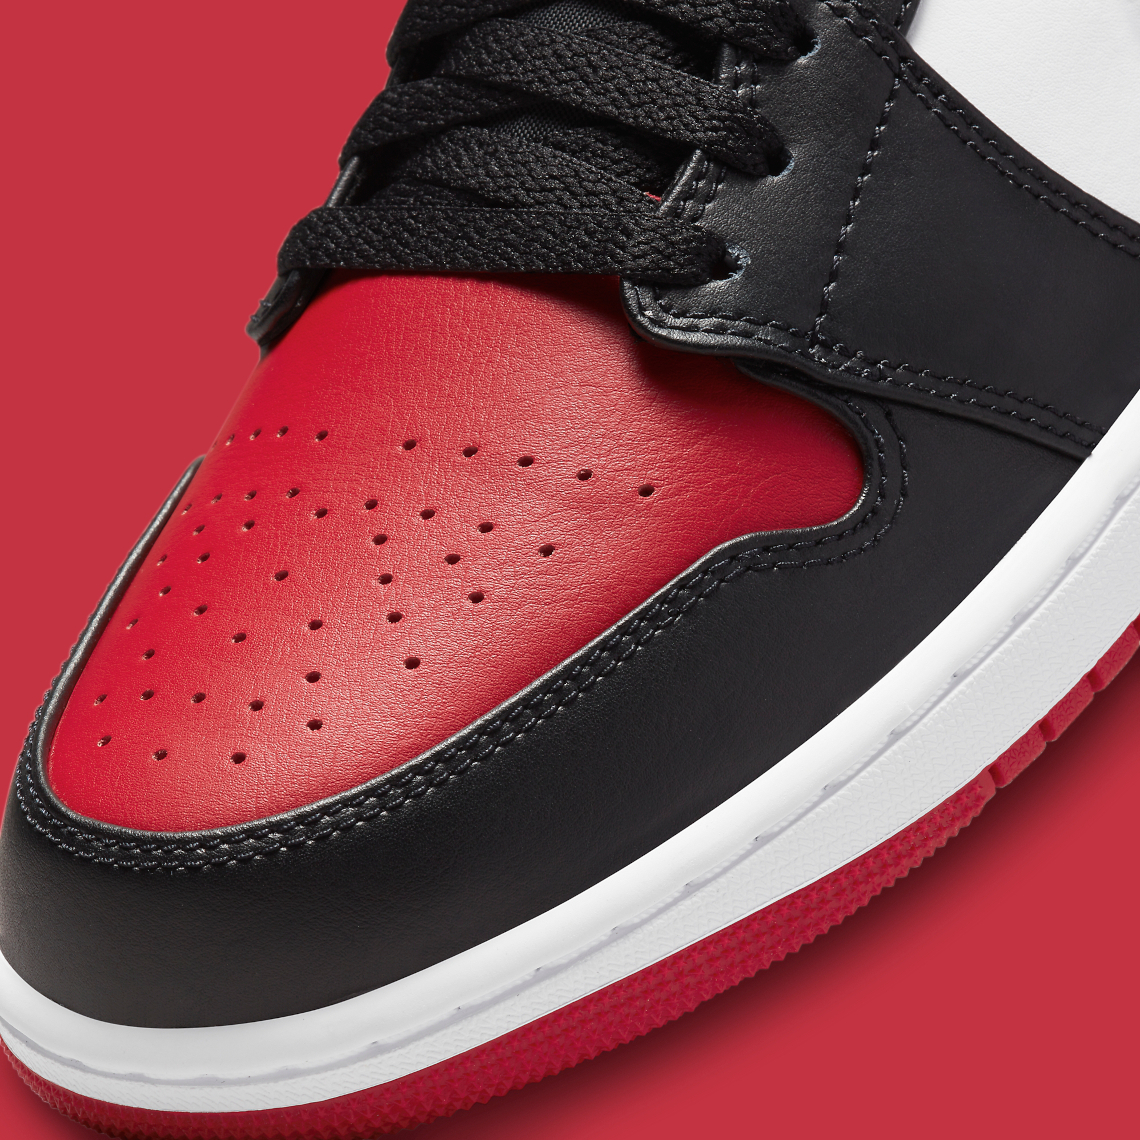 Air Jordan 1 Low Bred Toe 553558-612 Release Date | SneakerNews.com